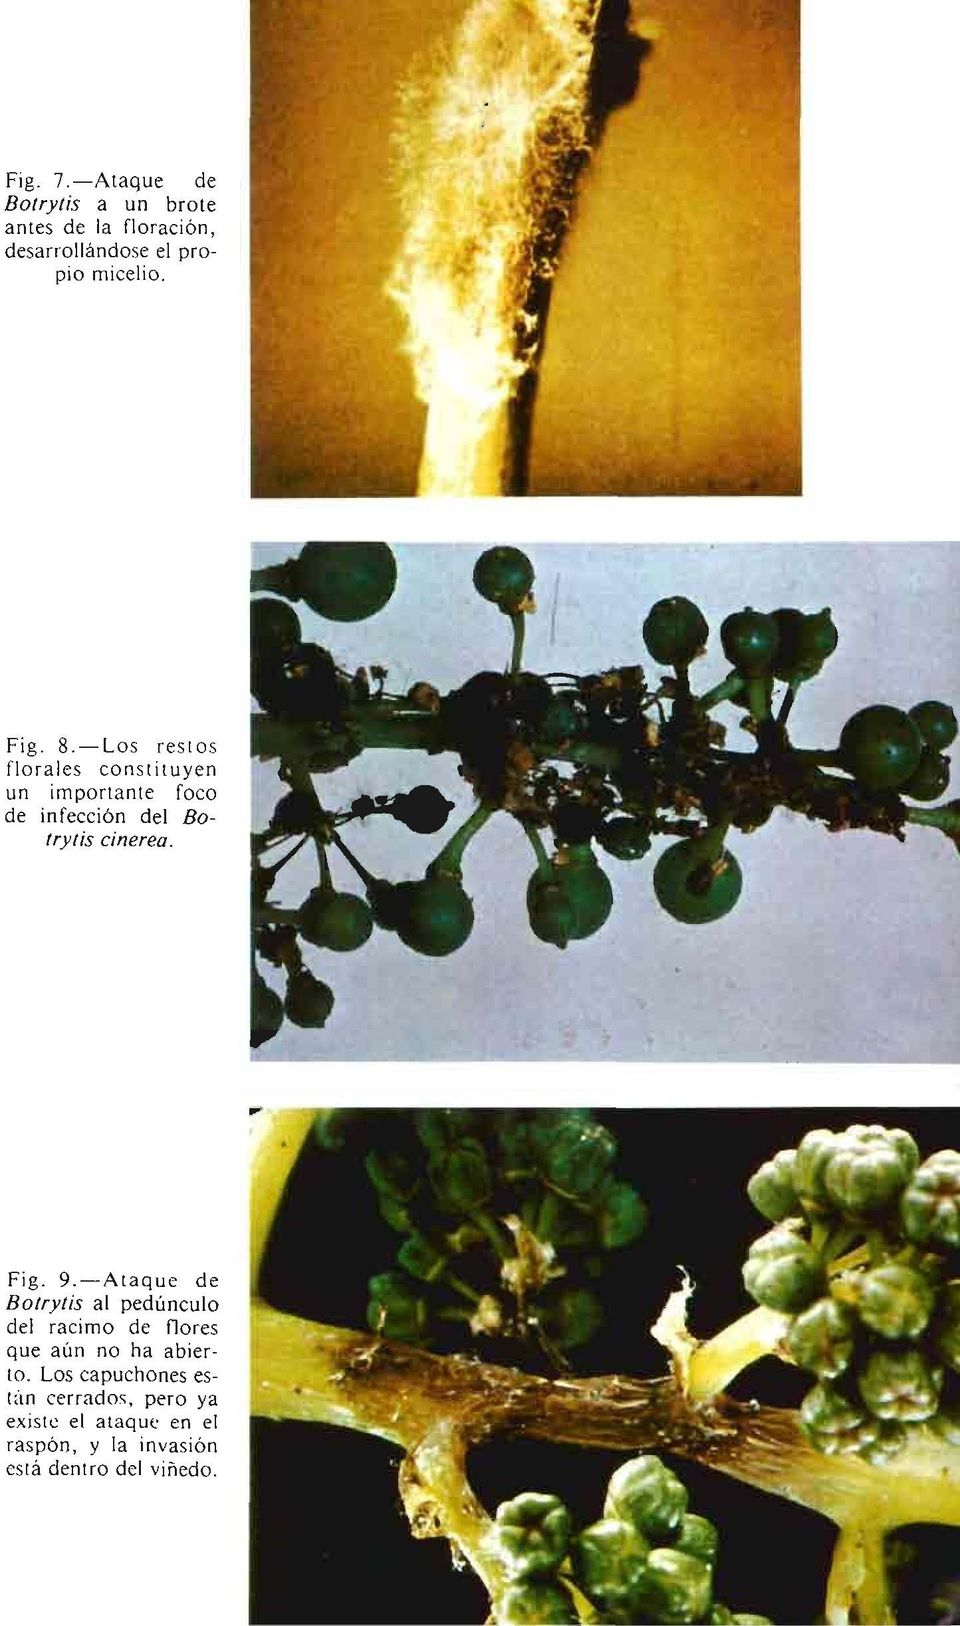 Fig. 9.-Ataque de Botrytis al pedúnculo del racimo de flores que aún no ha abierto.